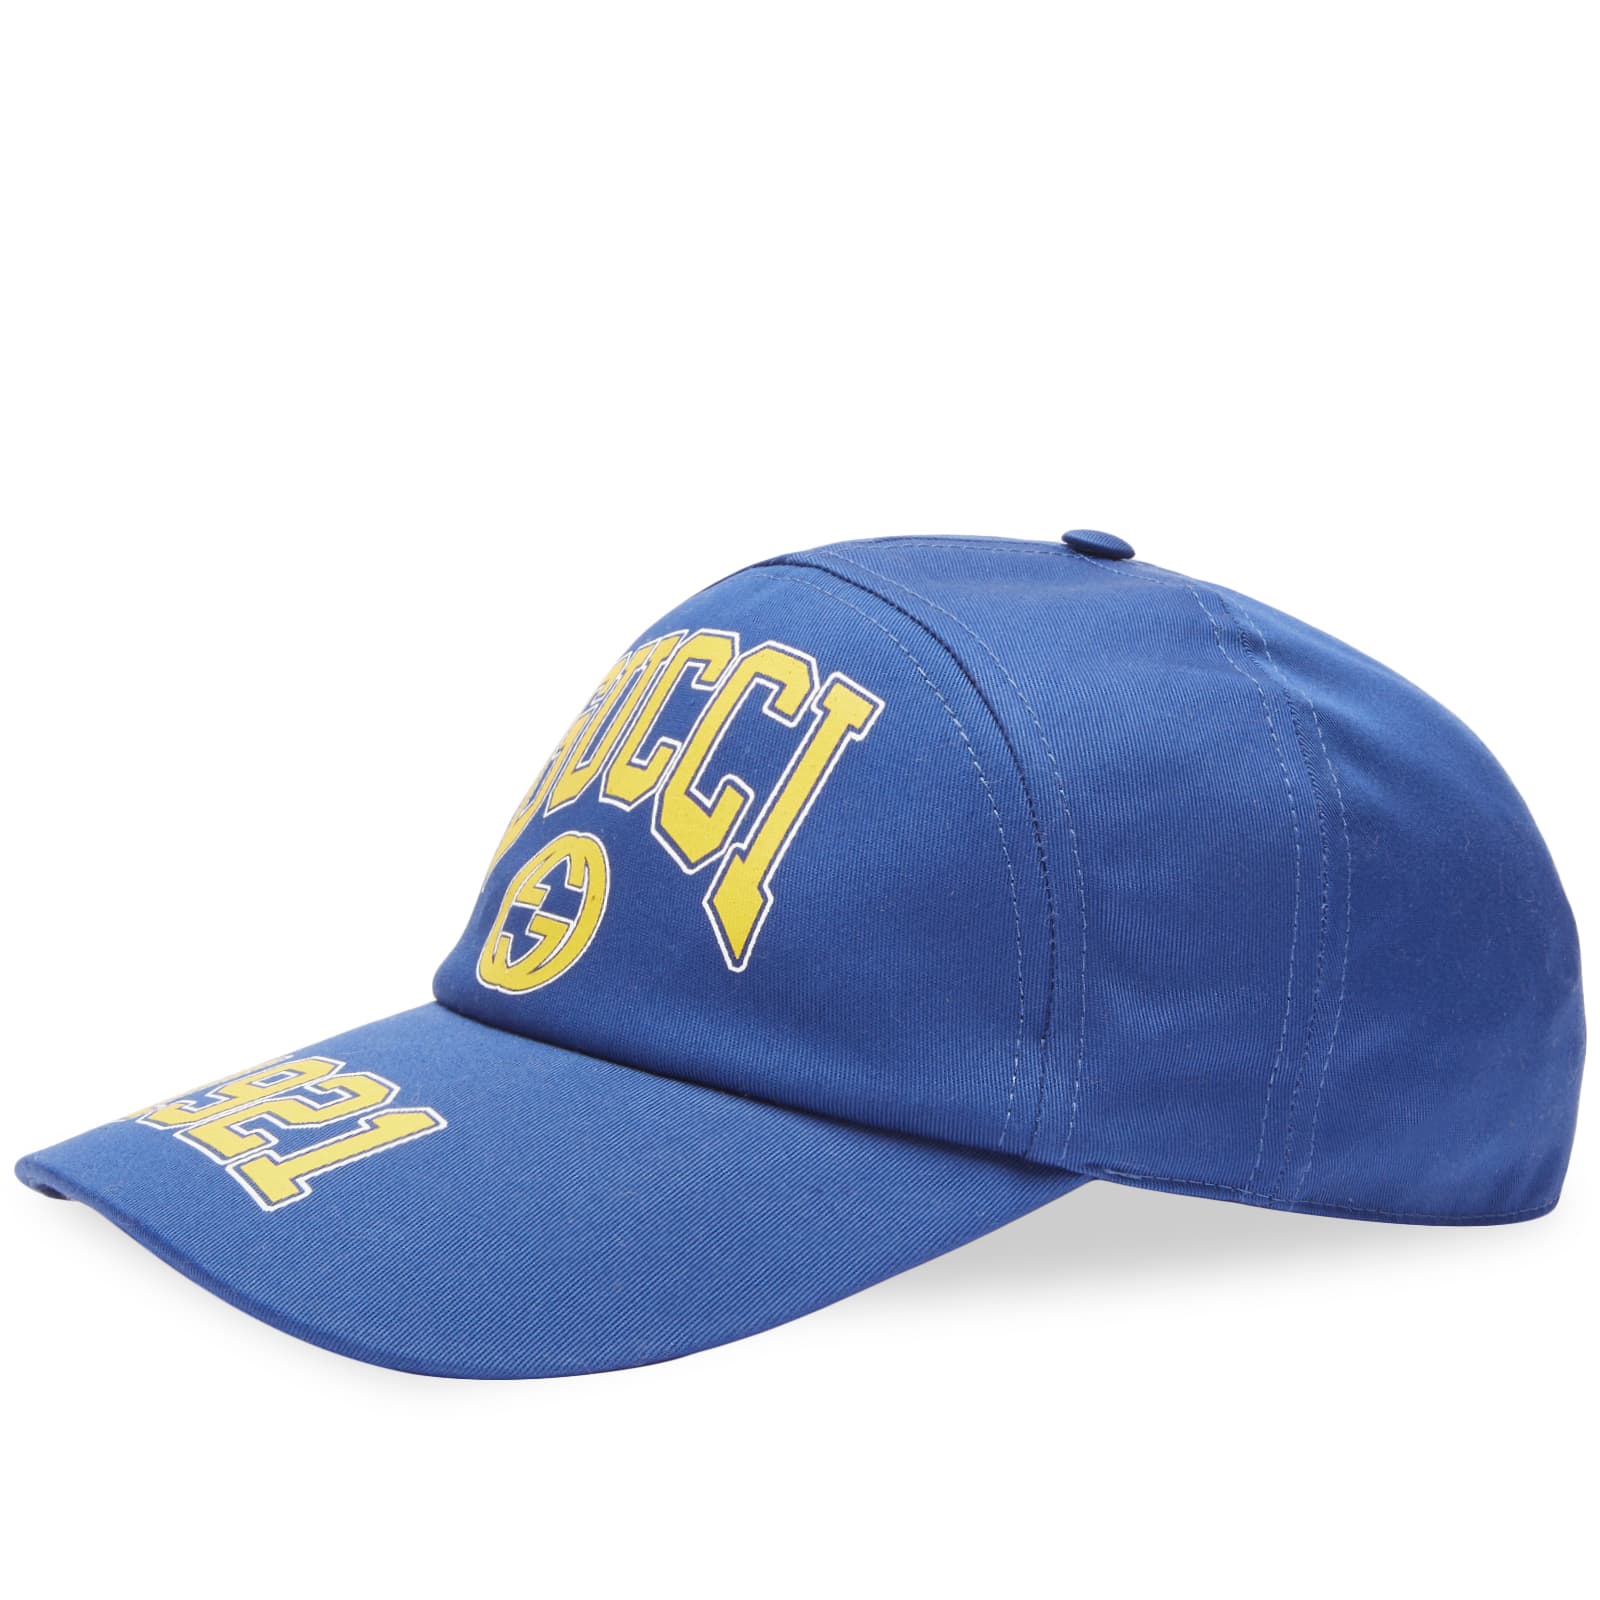 Бейсболка Gucci College Baseball, цвет Blue & Crop бейсбольная кепка от фирмы аранрэп bzrp кепка для гольфа мужская кепка с лошадью мужская бейсбольная женская кепка